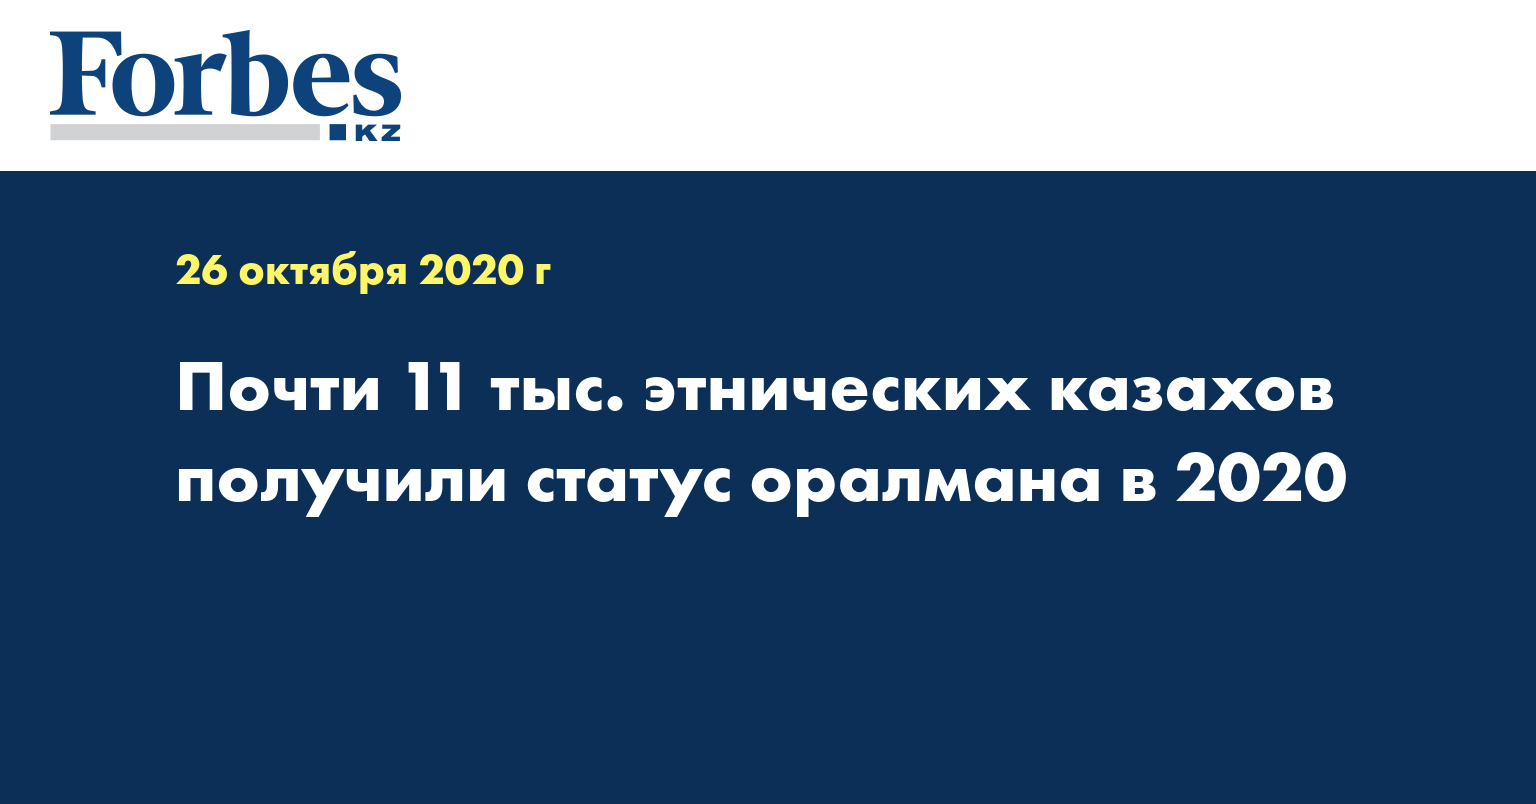  Почти 11 тыс. этнических казахов получили статус оралмана в 2020